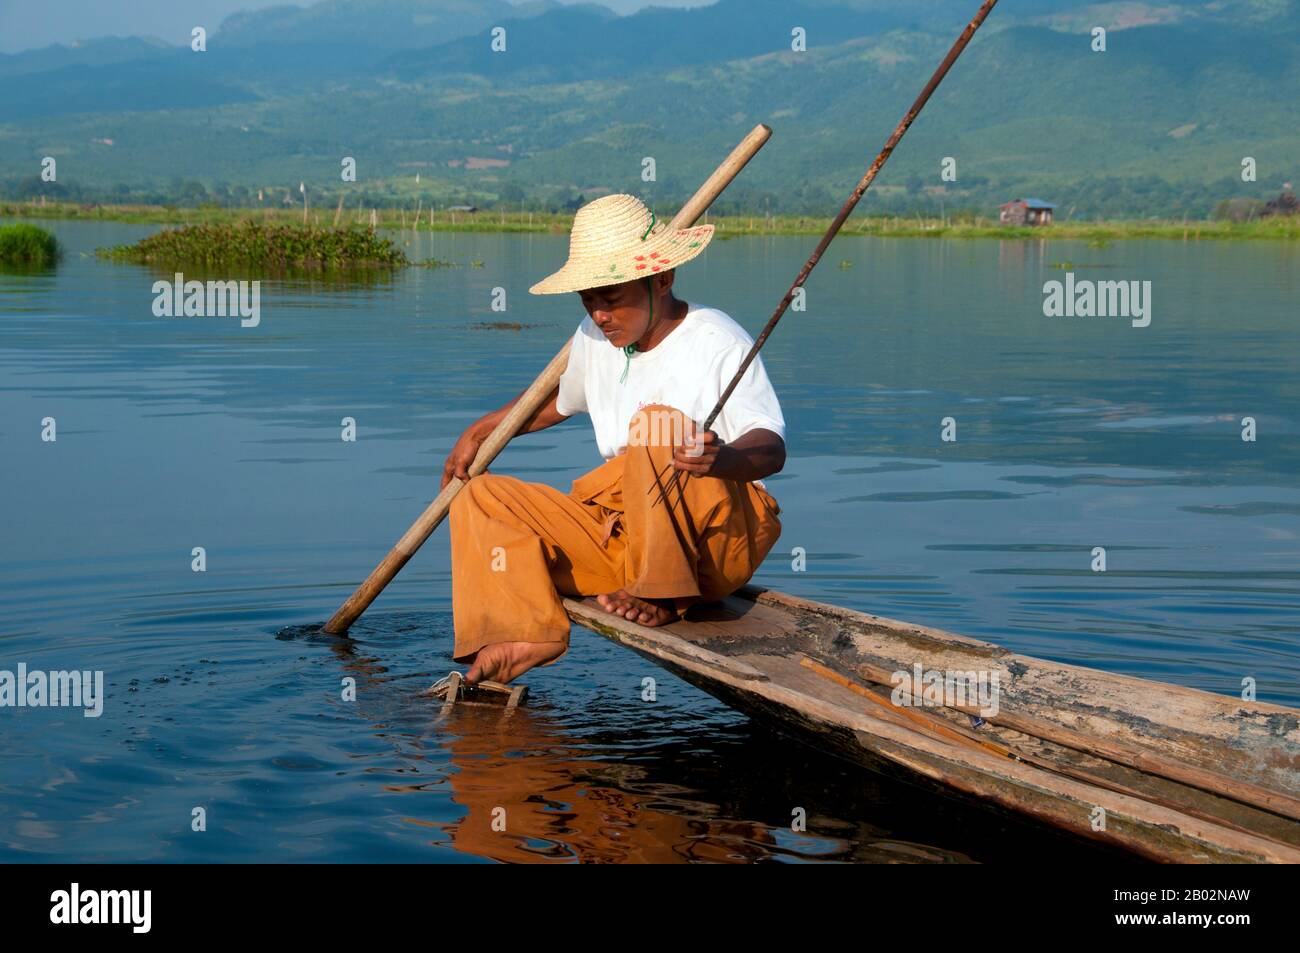 Der Inle Lake (116 km2) ist flach, lang, kristallklar und ruhig. Hier leben die Intha-Menschen, die auf beiden Seiten von hohen Hügeln eingehüftet sind. Die Intha-Männer sind dafür berühmt, dass sie mit einem Bein aufstehen, während sie mit hohen, konischen fallen für Inle-Karpfen und den anderen, kleineren Fischen, mit denen der See schwärmt, angeln. Die Intha-Frauen, die Marktgärtner sind, nutzen den fruchtbaren Boden rund um den See sowie schwimmende Inseln aus Wasserhyazinthen und Schlamm, um Blumenkohl, Tomaten, Gurken, Kabbagen, Bohnen und Auberginen anzubauen. Inle ist ein einfacher Ort, aber ein Ort mit viel - beides erholsam Stockfoto